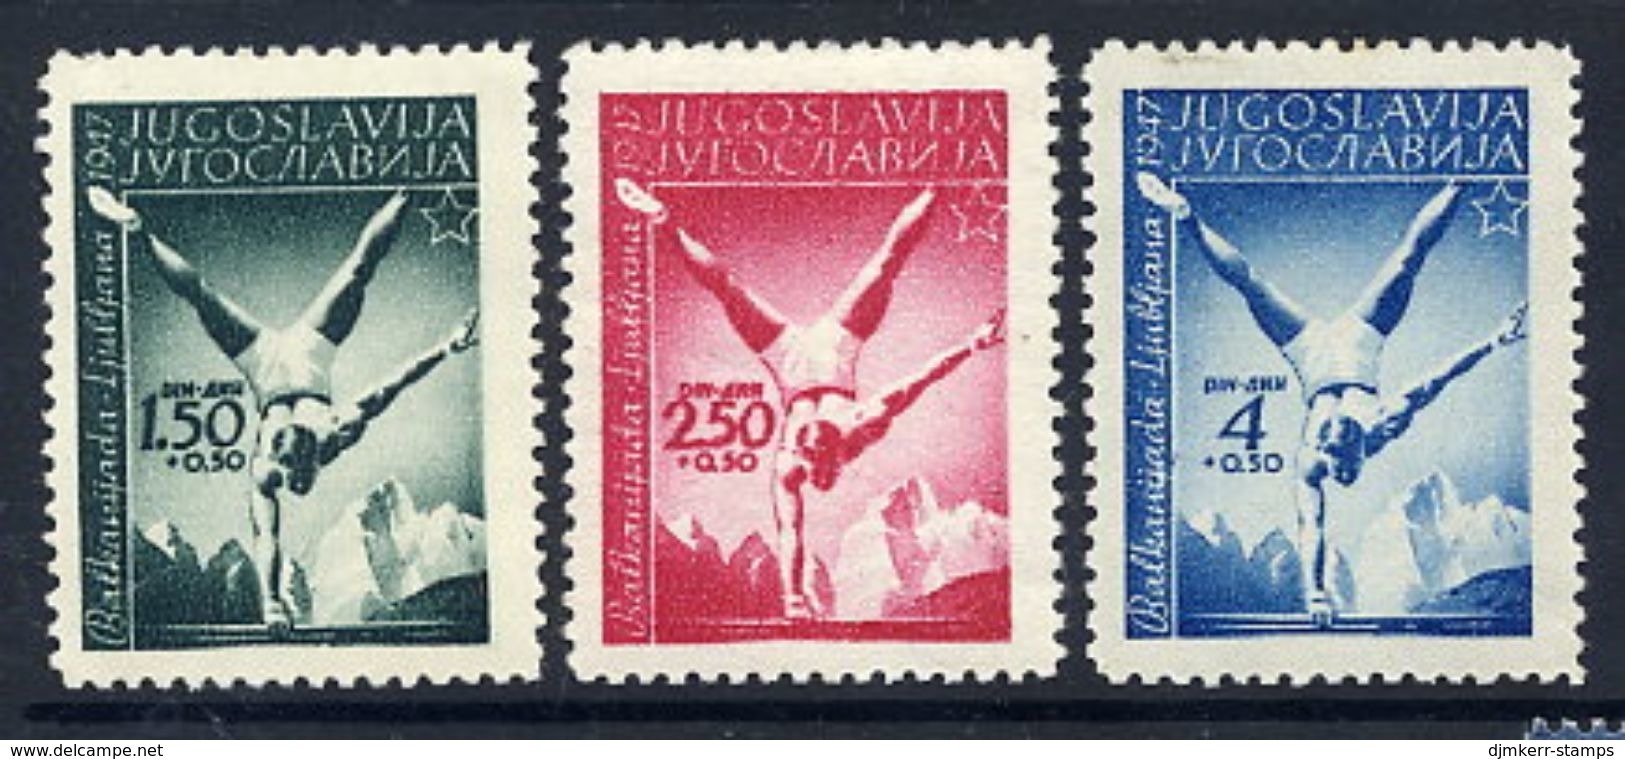 YUGOSLAVIA 1947 Balkan Games MNH / **.  Michel 524-26 - Unused Stamps